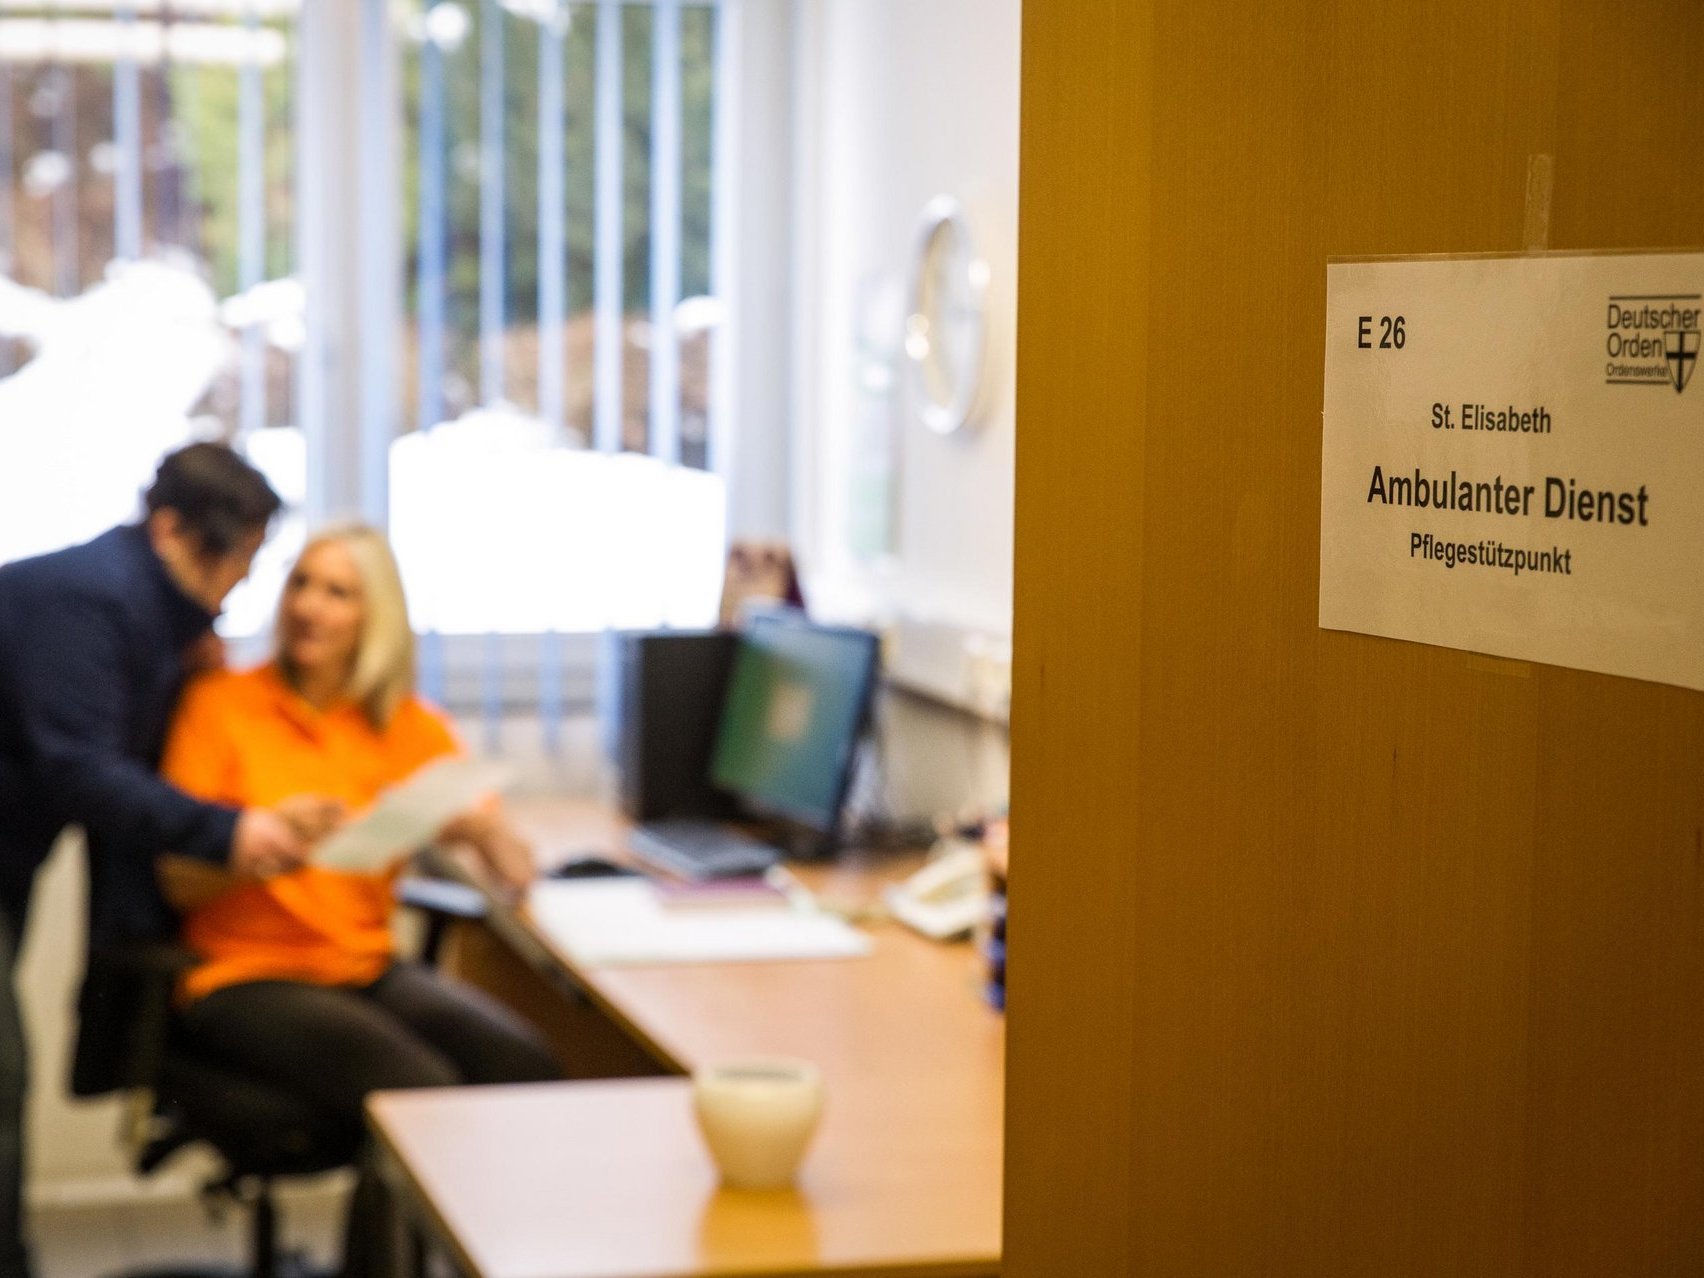 Auf einer halb geöffneten Bürotür sind auf einem Schild die Worte Ambulanter Dienst zu lesen. Im Inneren des Büros unterhalten sich zwei Personen über ein Schriftstück gebeugt.